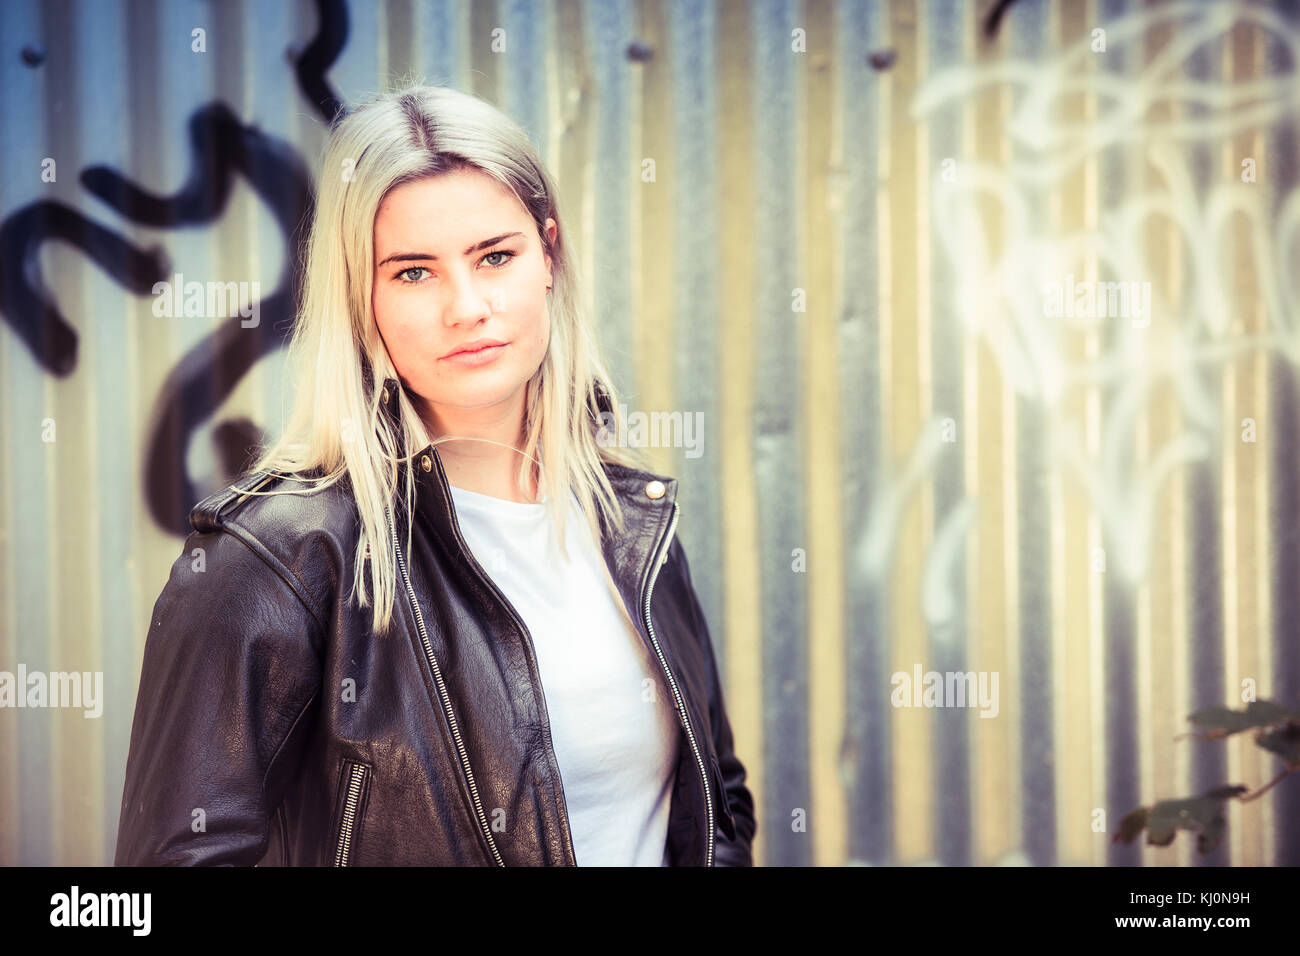 Jugendmädchen Modellierung in Großbritannien: Eine junge 16-jährige Teenager Modell, das Tragen eines schwarzen Leder Jacke, Moody, vor einem Graffiti posing abgedeckt Wellblech metall Wand, Großbritannien Stockfoto